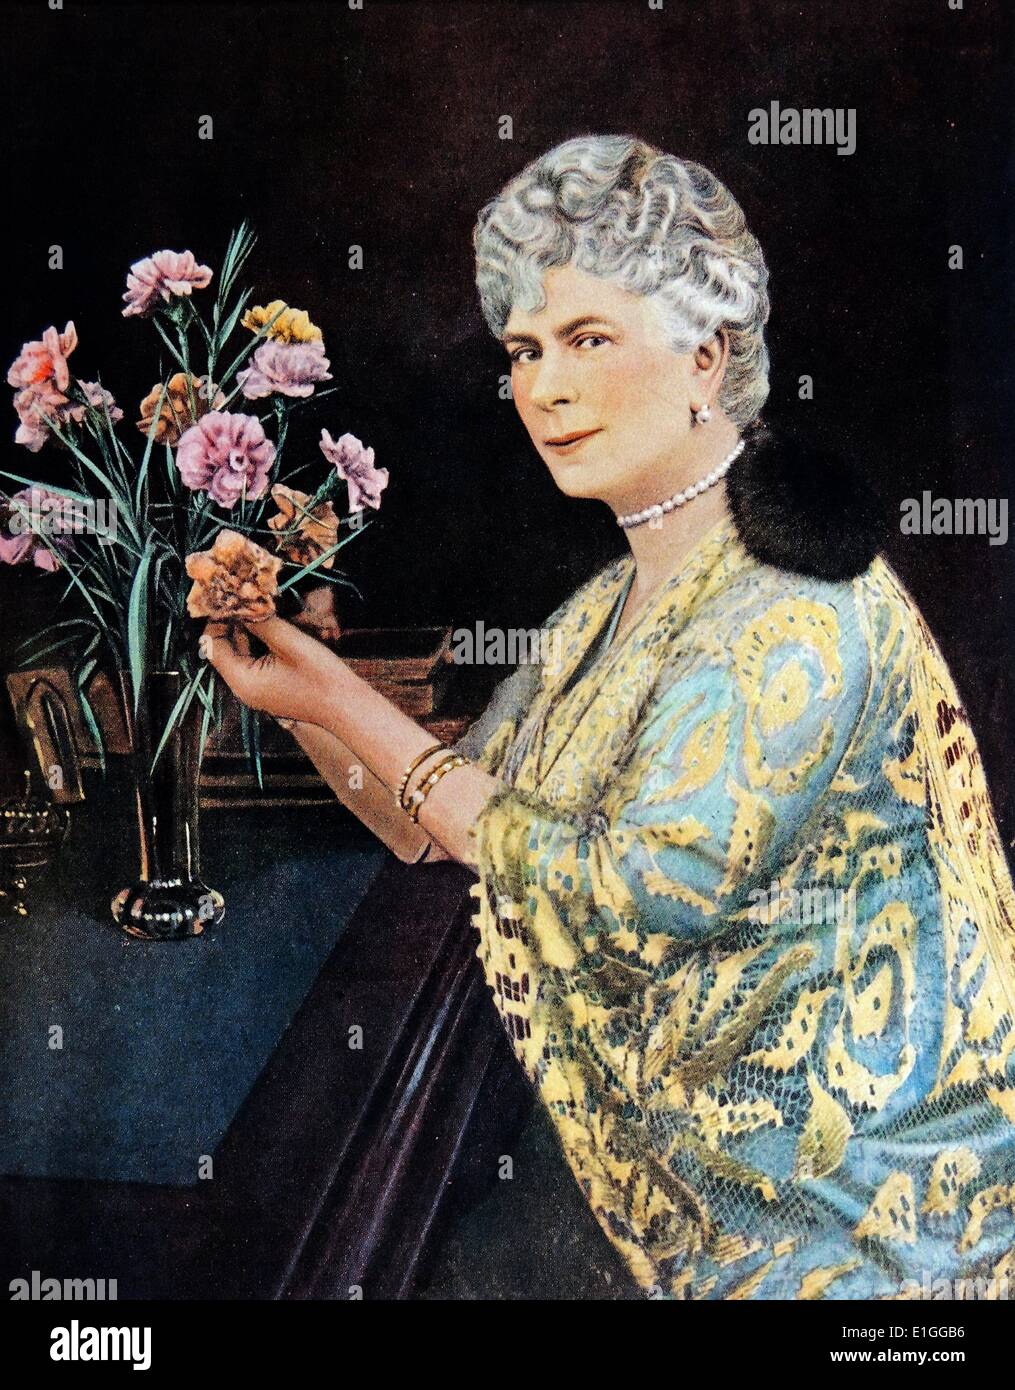 La pintura de María de Teck (1867 - 1953). María de Teck fue la Reina del Reino Unido y la esposa de King-Emperor George V. FECHA 1923 Foto de stock